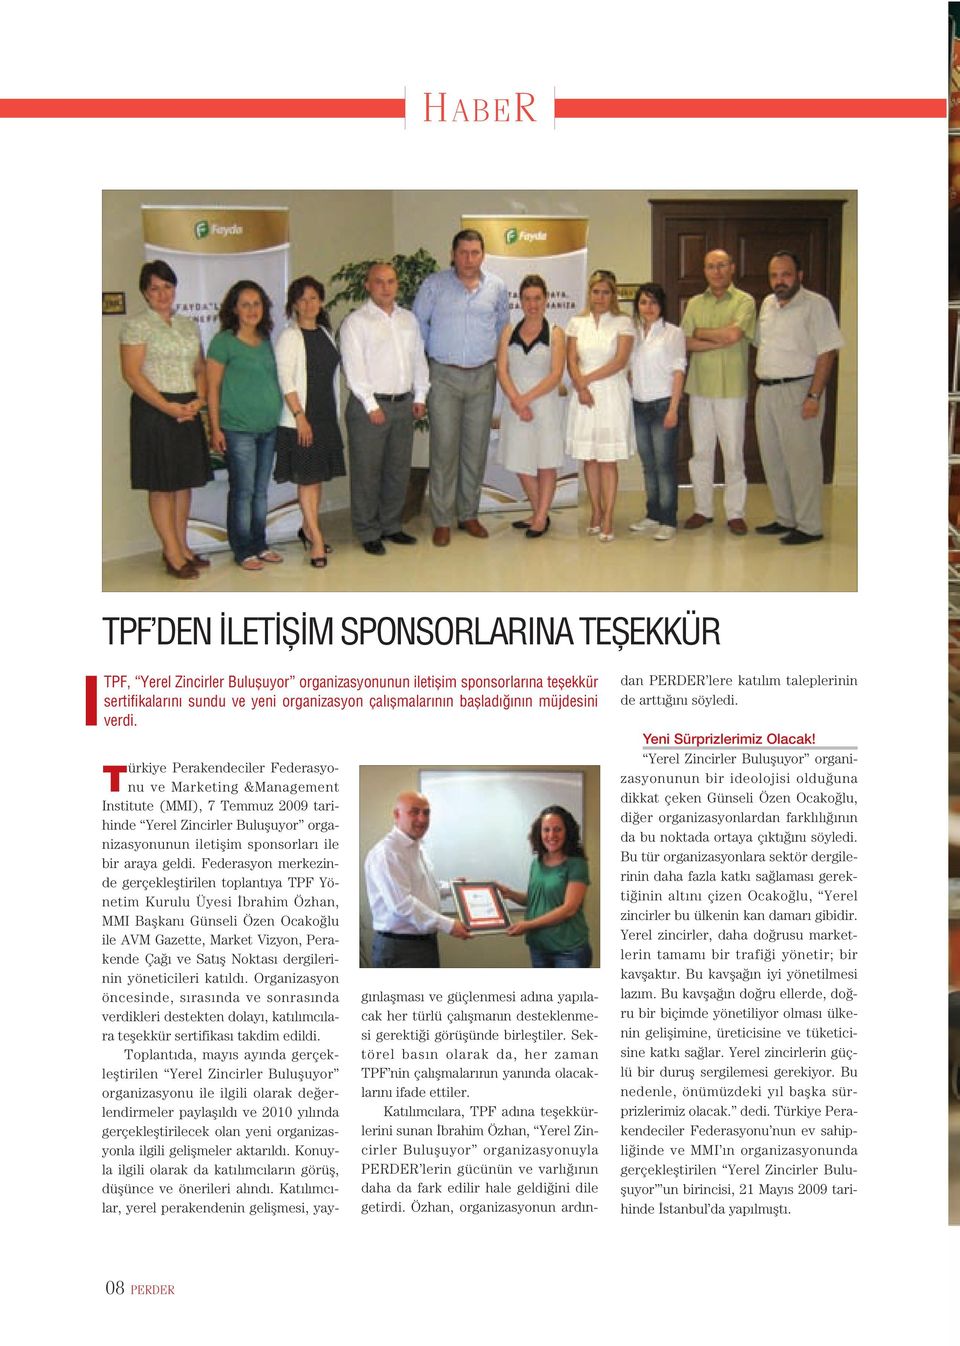 Türkiye Perakendeciler Federasyonu ve Marketing &Management Institute (MMI), 7 Temmuz 2009 tarihinde Yerel Zincirler Bulufluyor organizasyonunun iletiflim sponsorlar ile bir araya geldi.